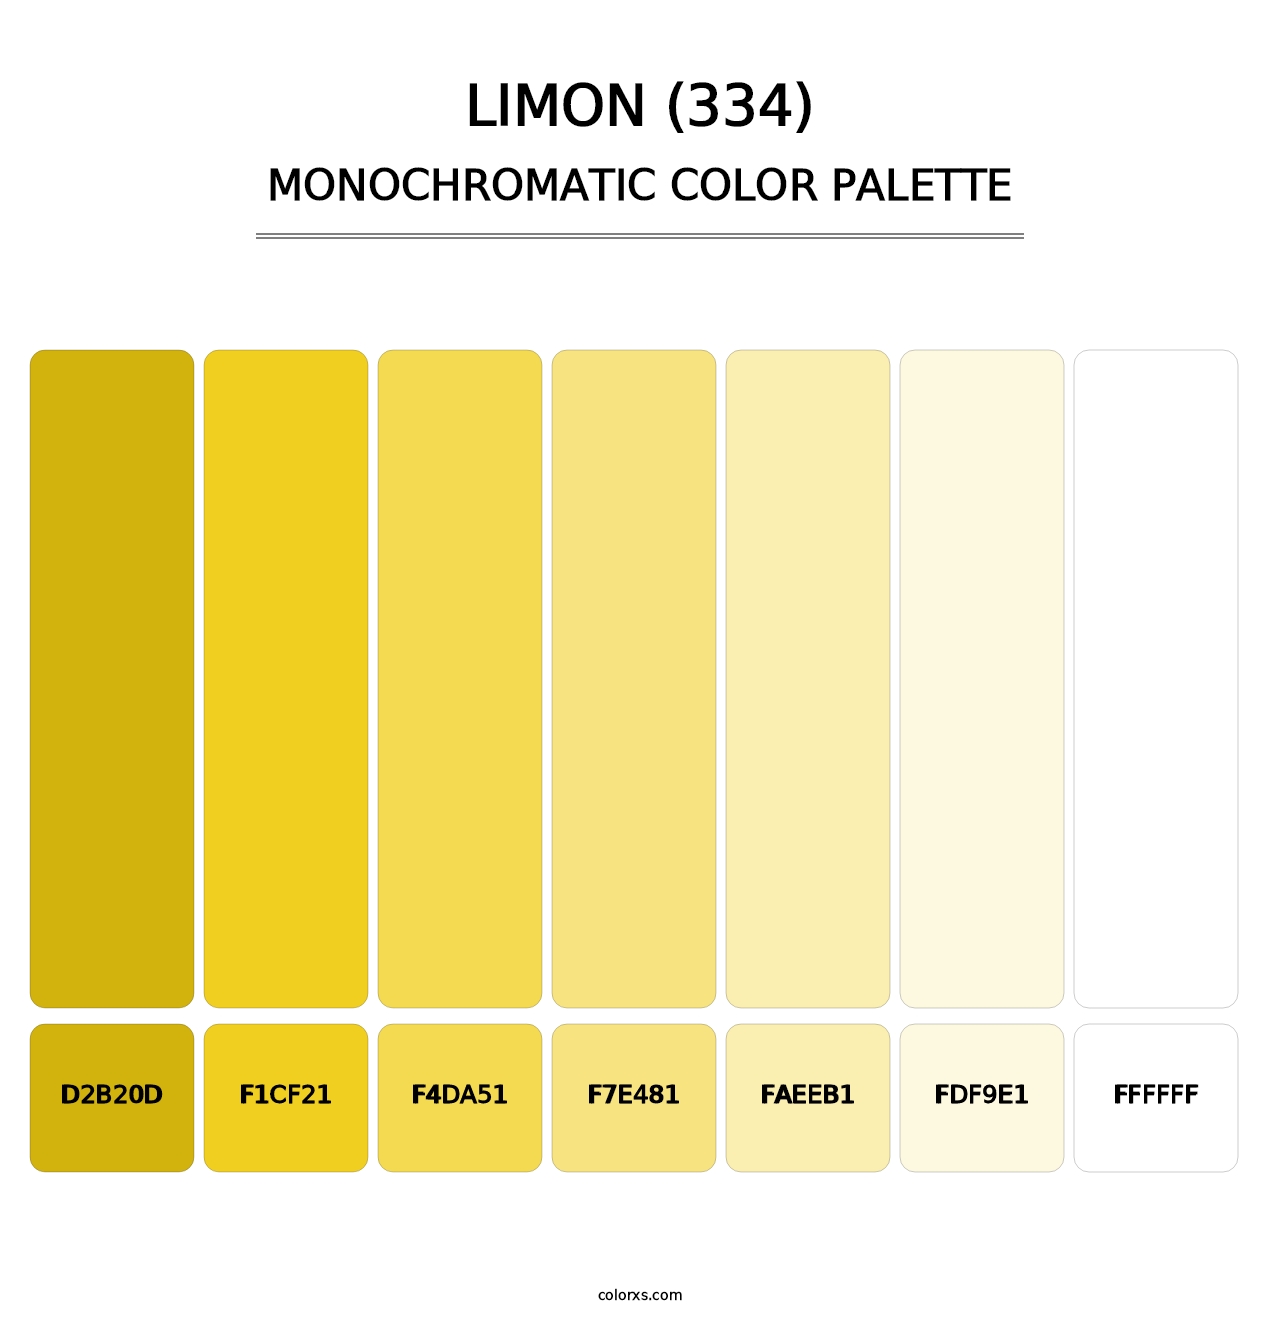 Limon (334) - Monochromatic Color Palette